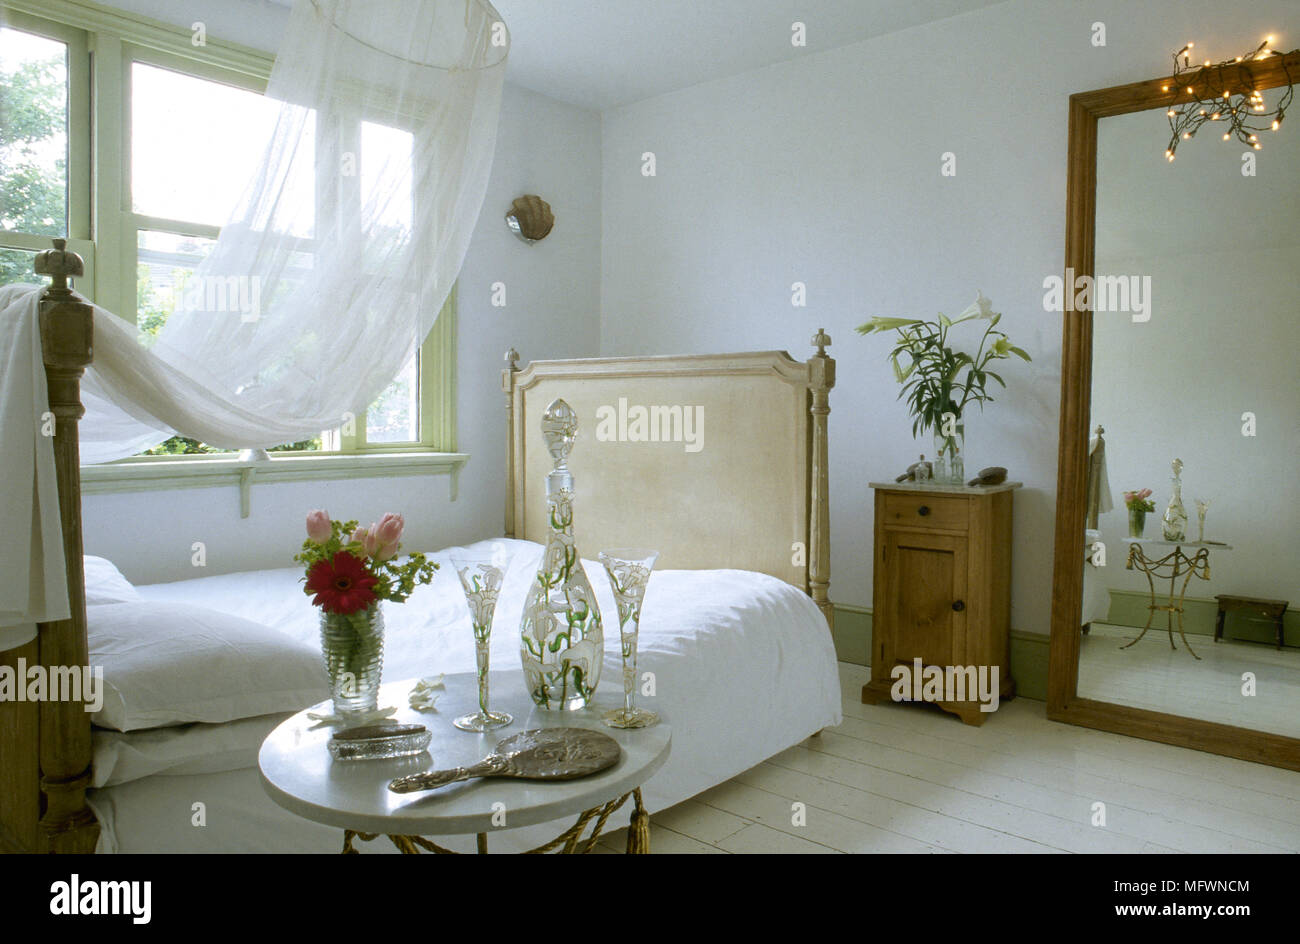 Romantisches Schlafzimmer mit Baldachin über ein Doppelbett, einen großen  Spiegel, Nachttisch und einem sonnigen Fenster Stockfotografie - Alamy